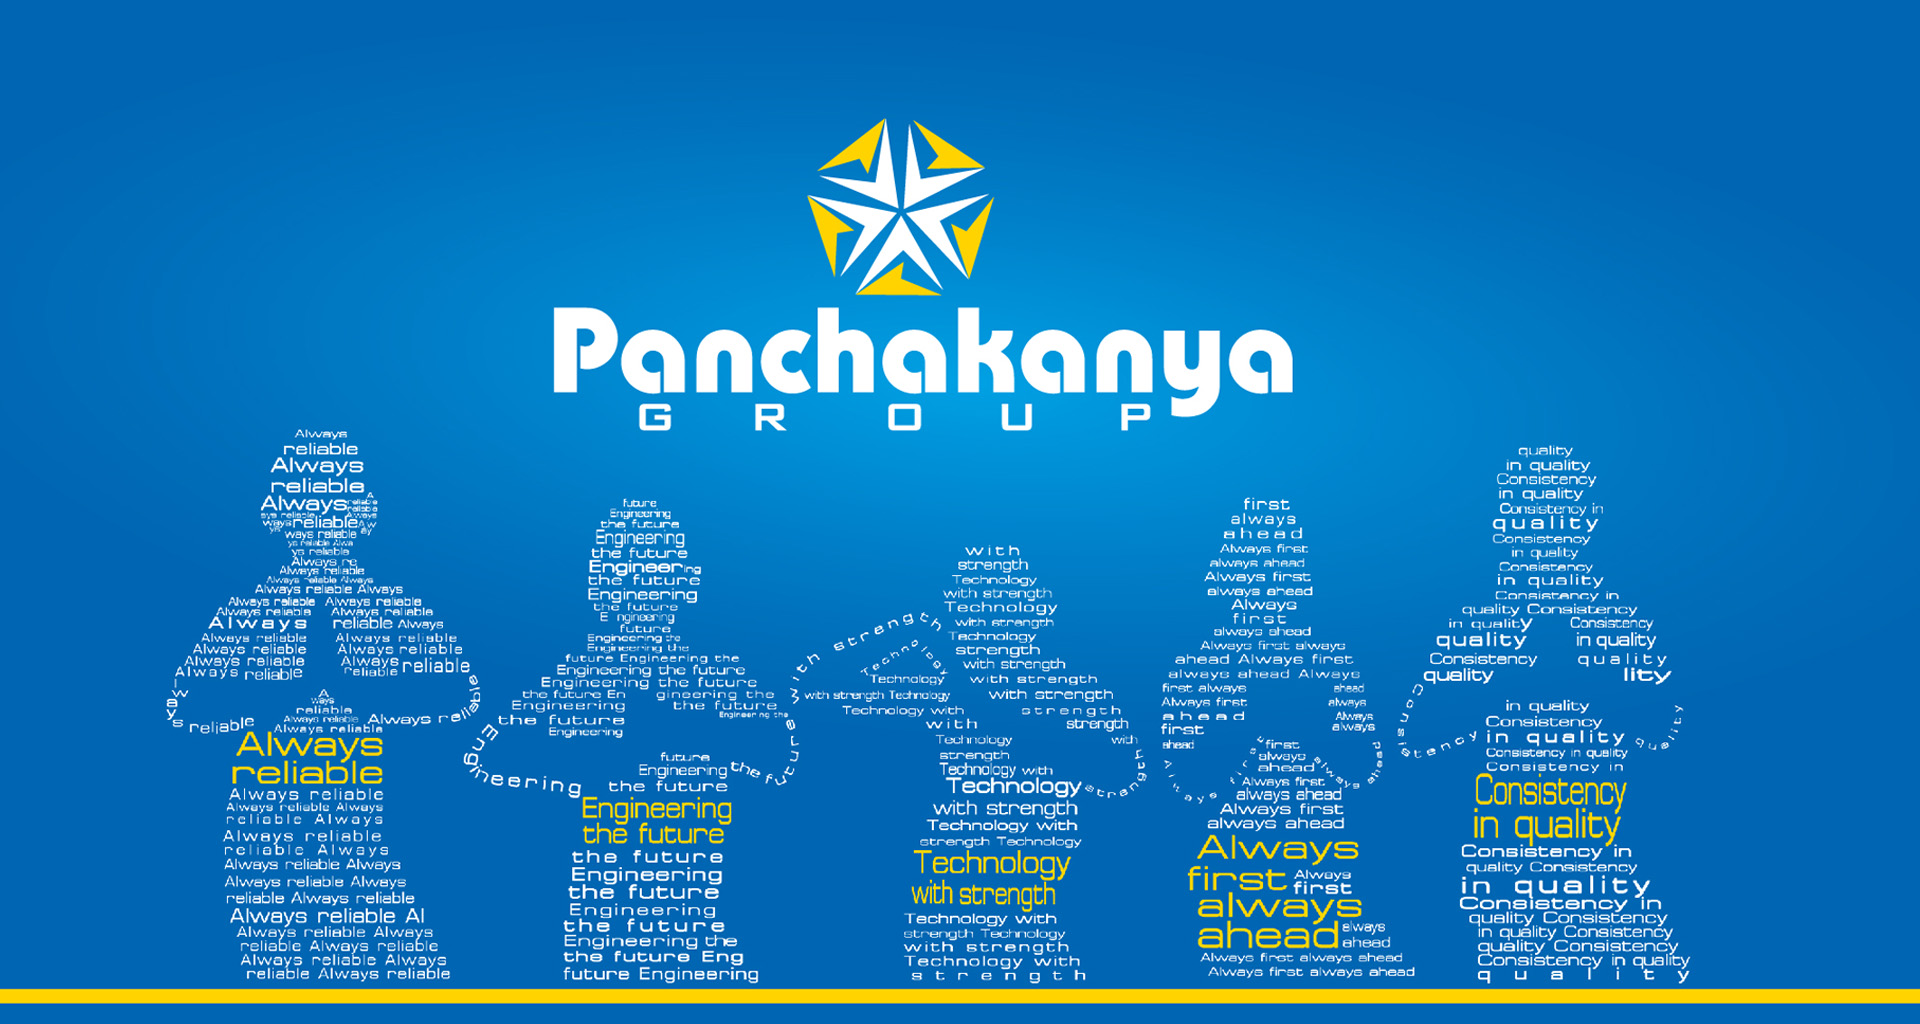 Panchakanya History